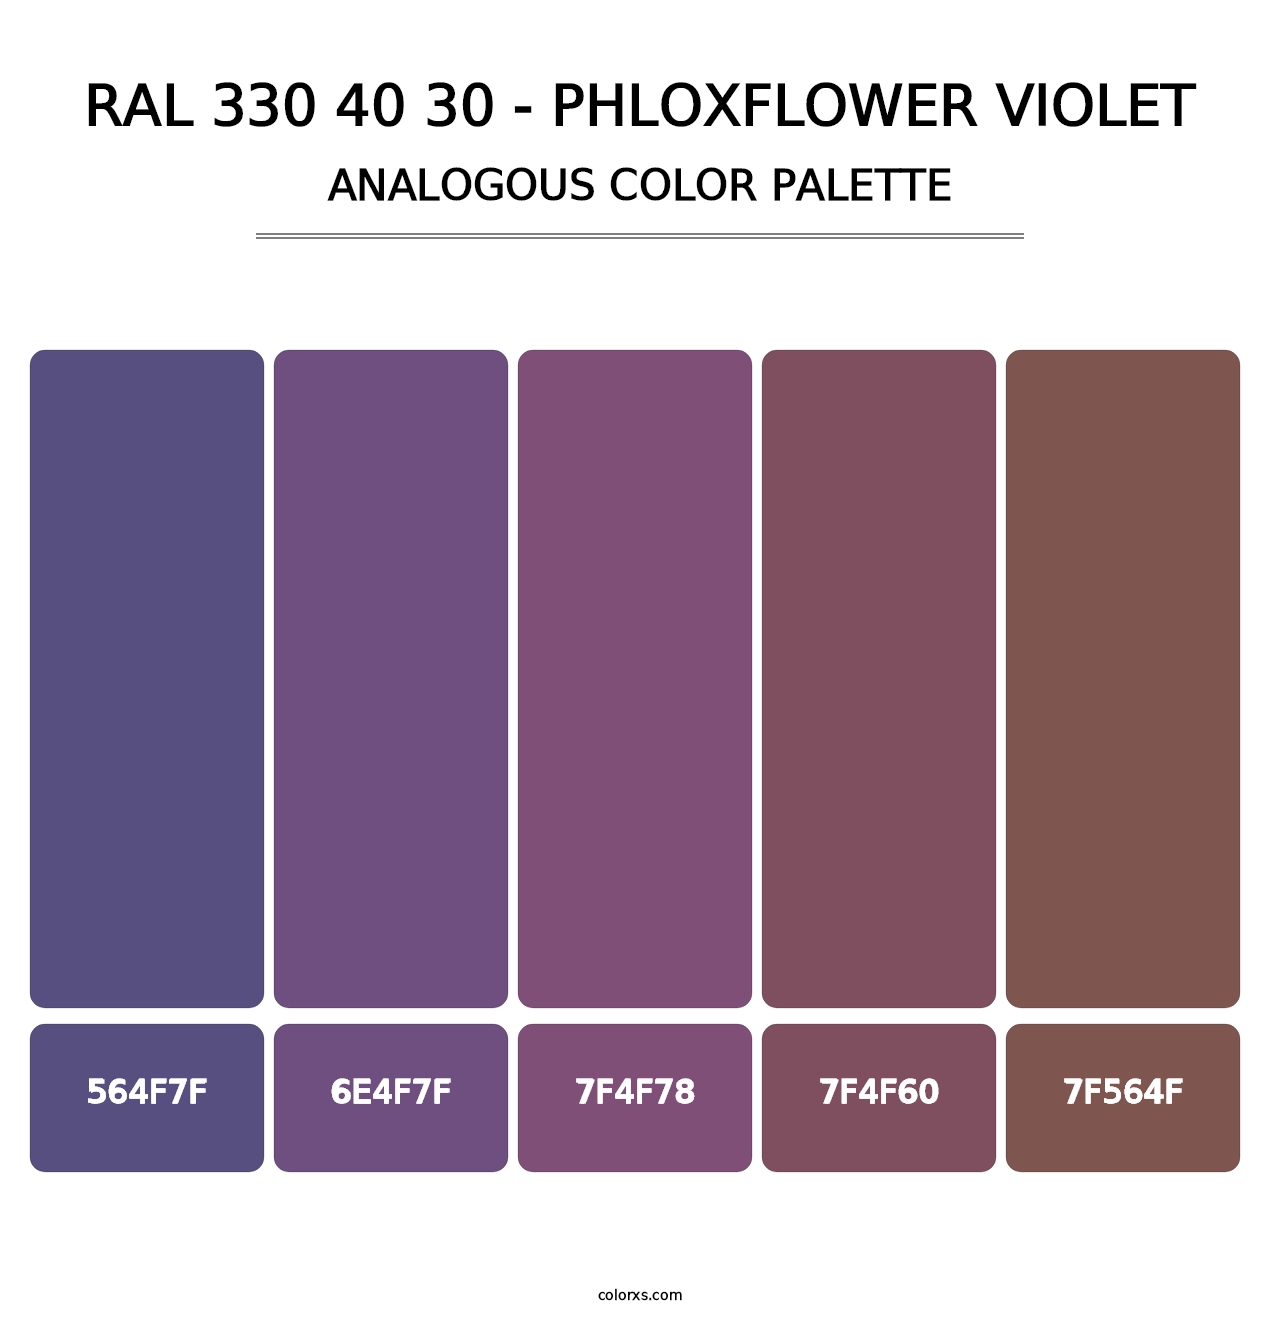 RAL 330 40 30 - Phloxflower Violet - Analogous Color Palette